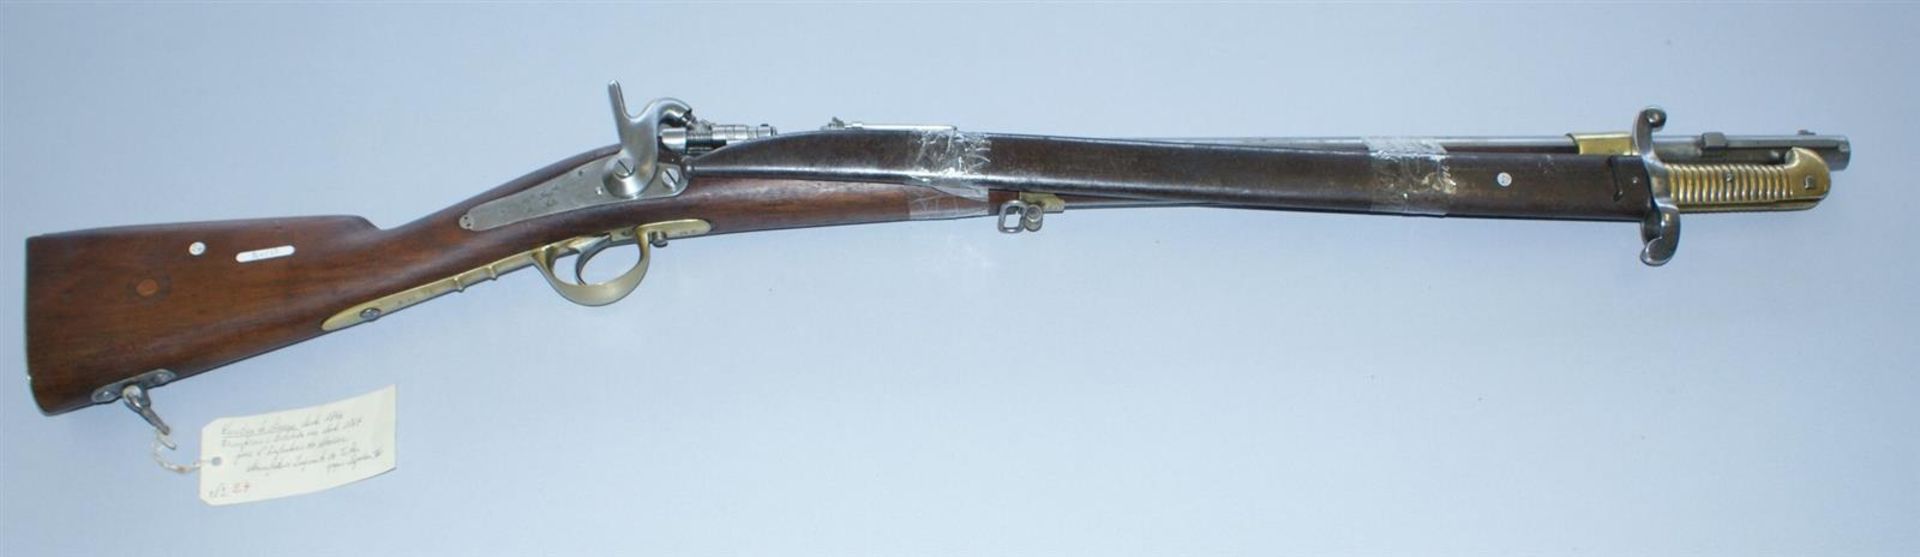 1 CARABINE de chasseur modèle 1846 modifié 1867 à tabatière pour Infanterie de [...]